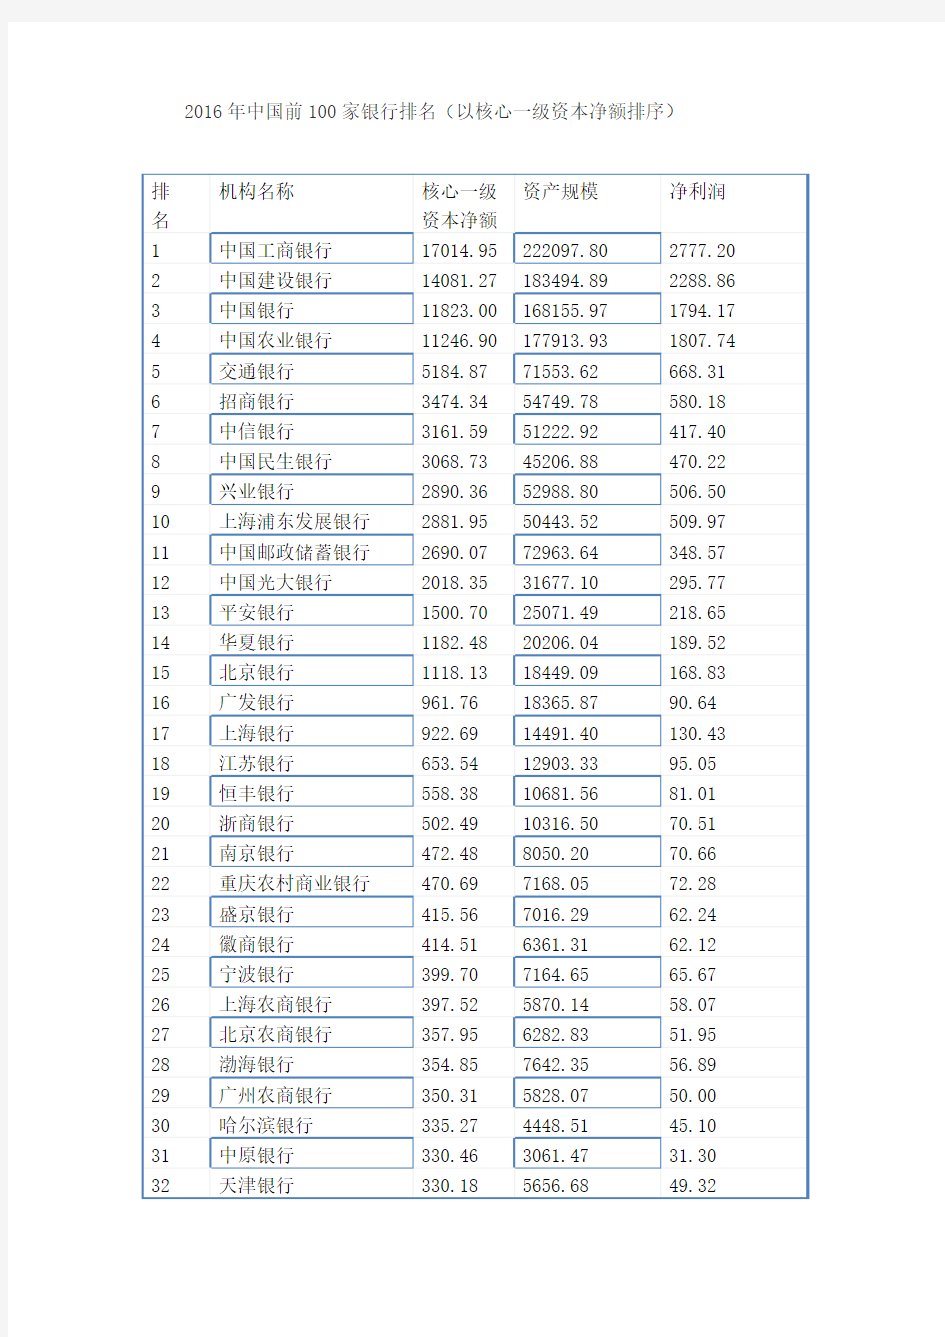 2016年中国前100家银行排名(以核心一级资本净额排序)